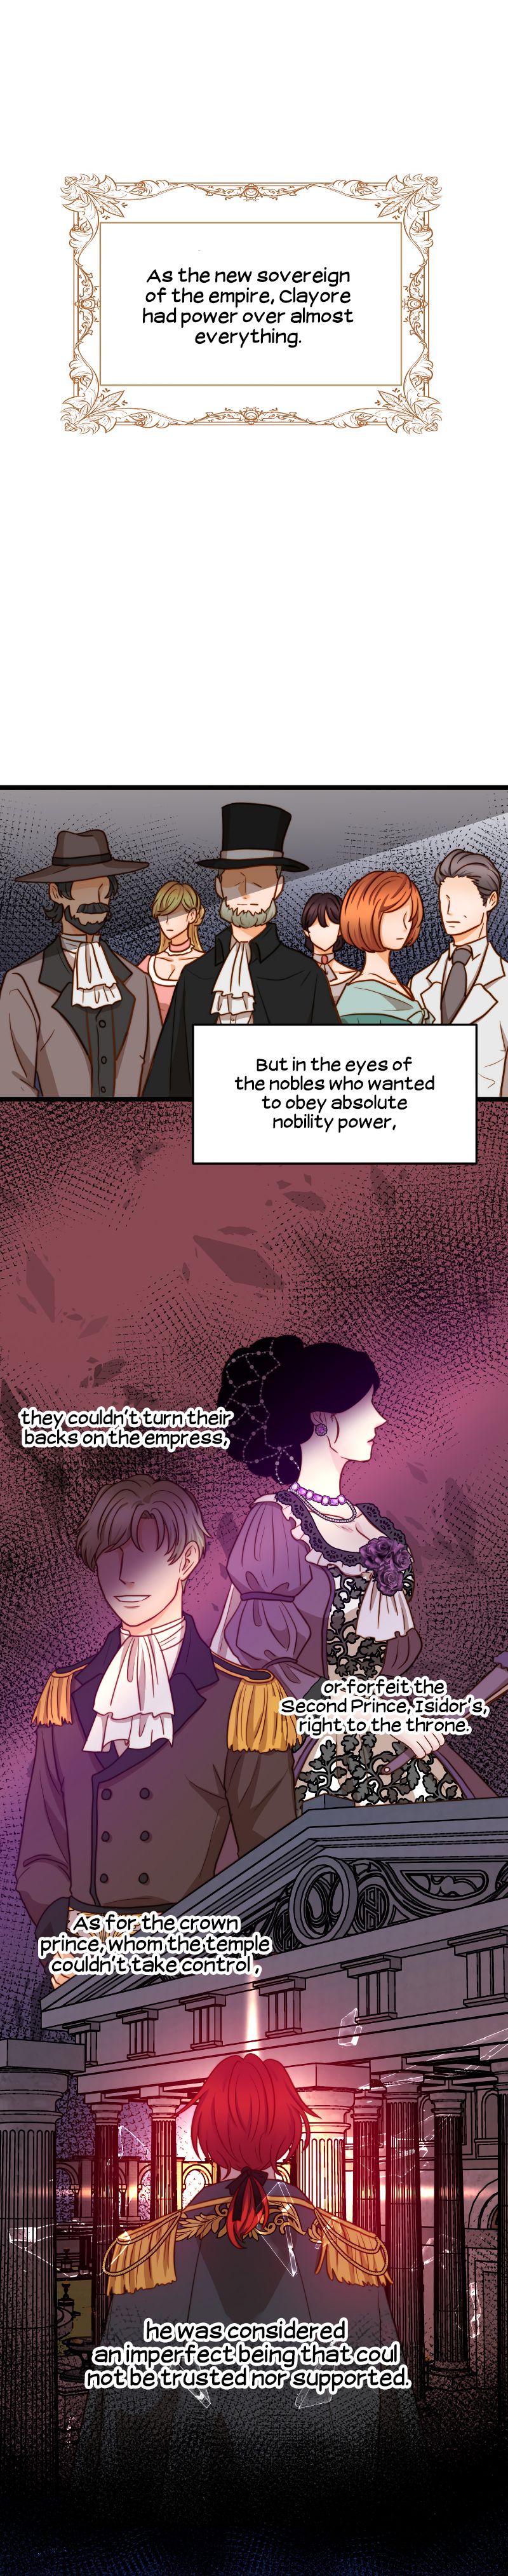 Irregular Empress - Page 2